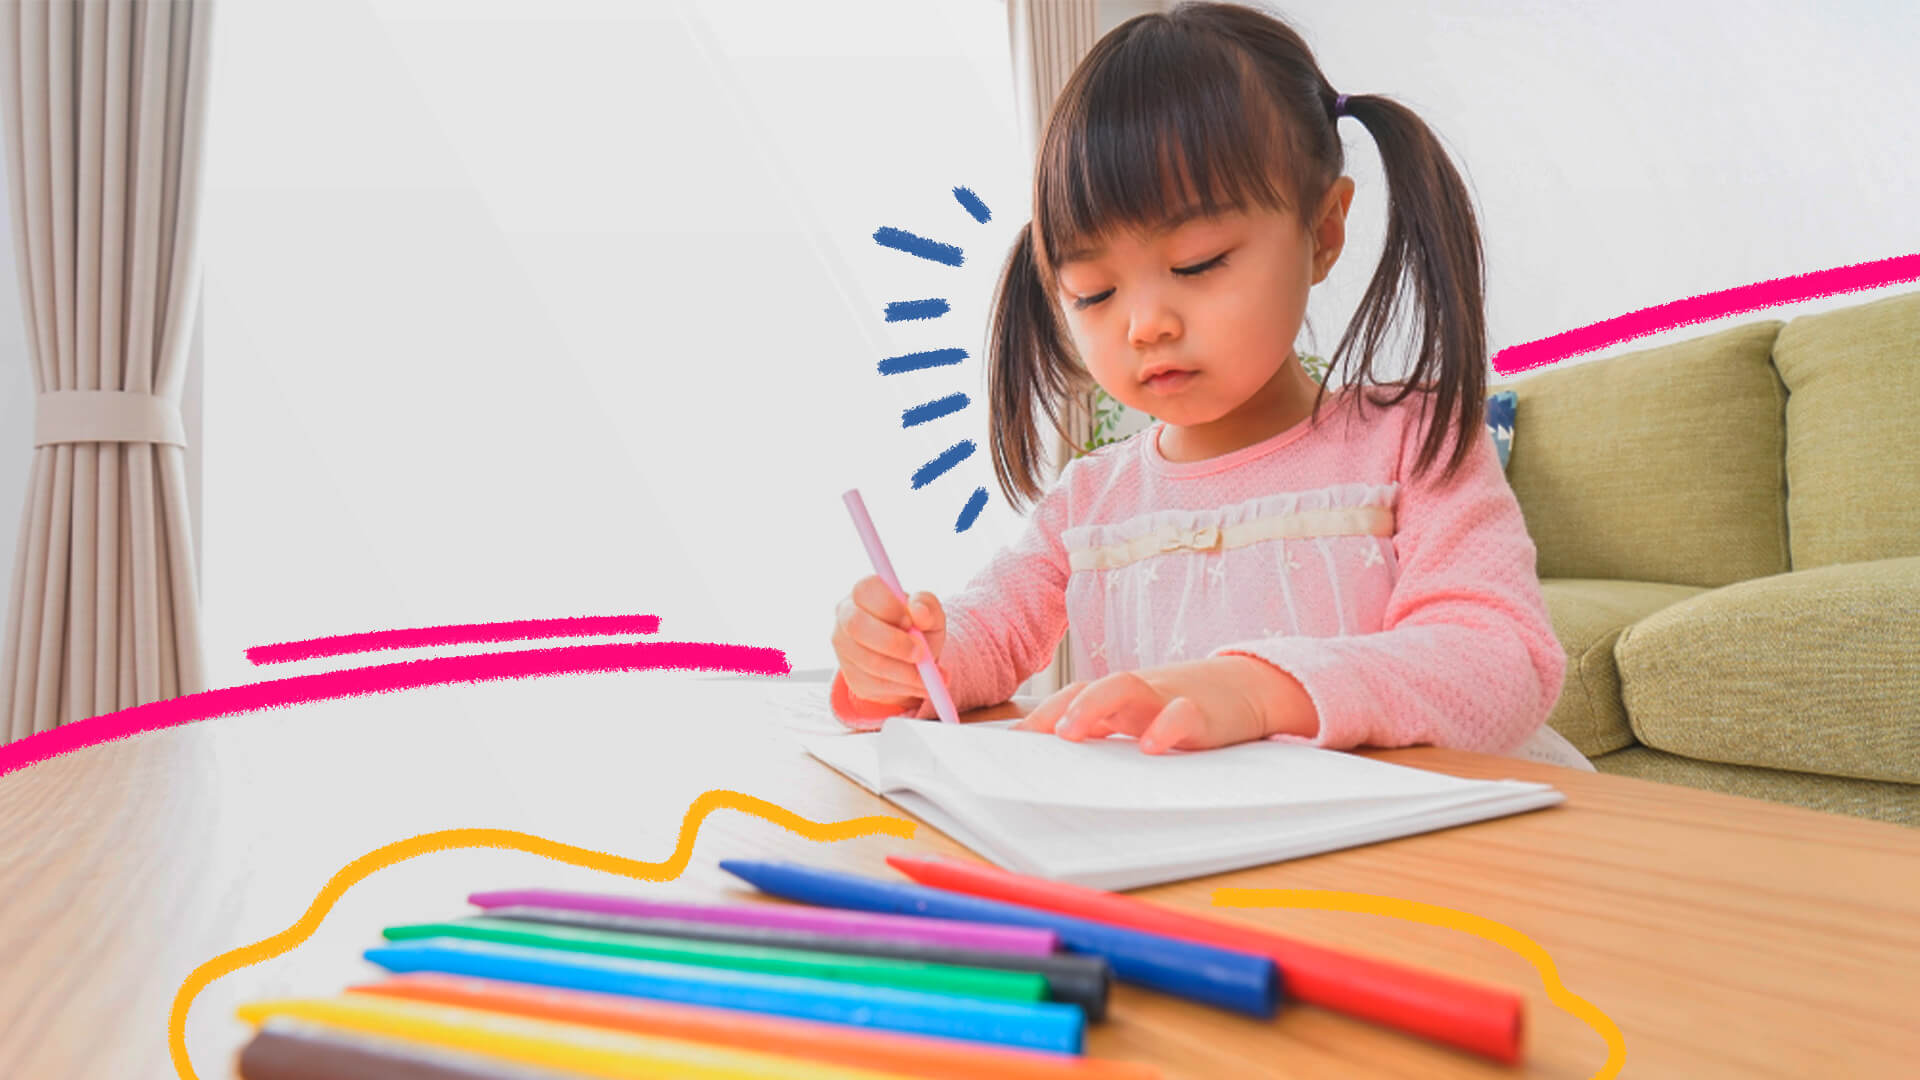 Imagem mostra uma menina branca com cabelo liso escuro sentada e desenhando com papel em canetas coloridas